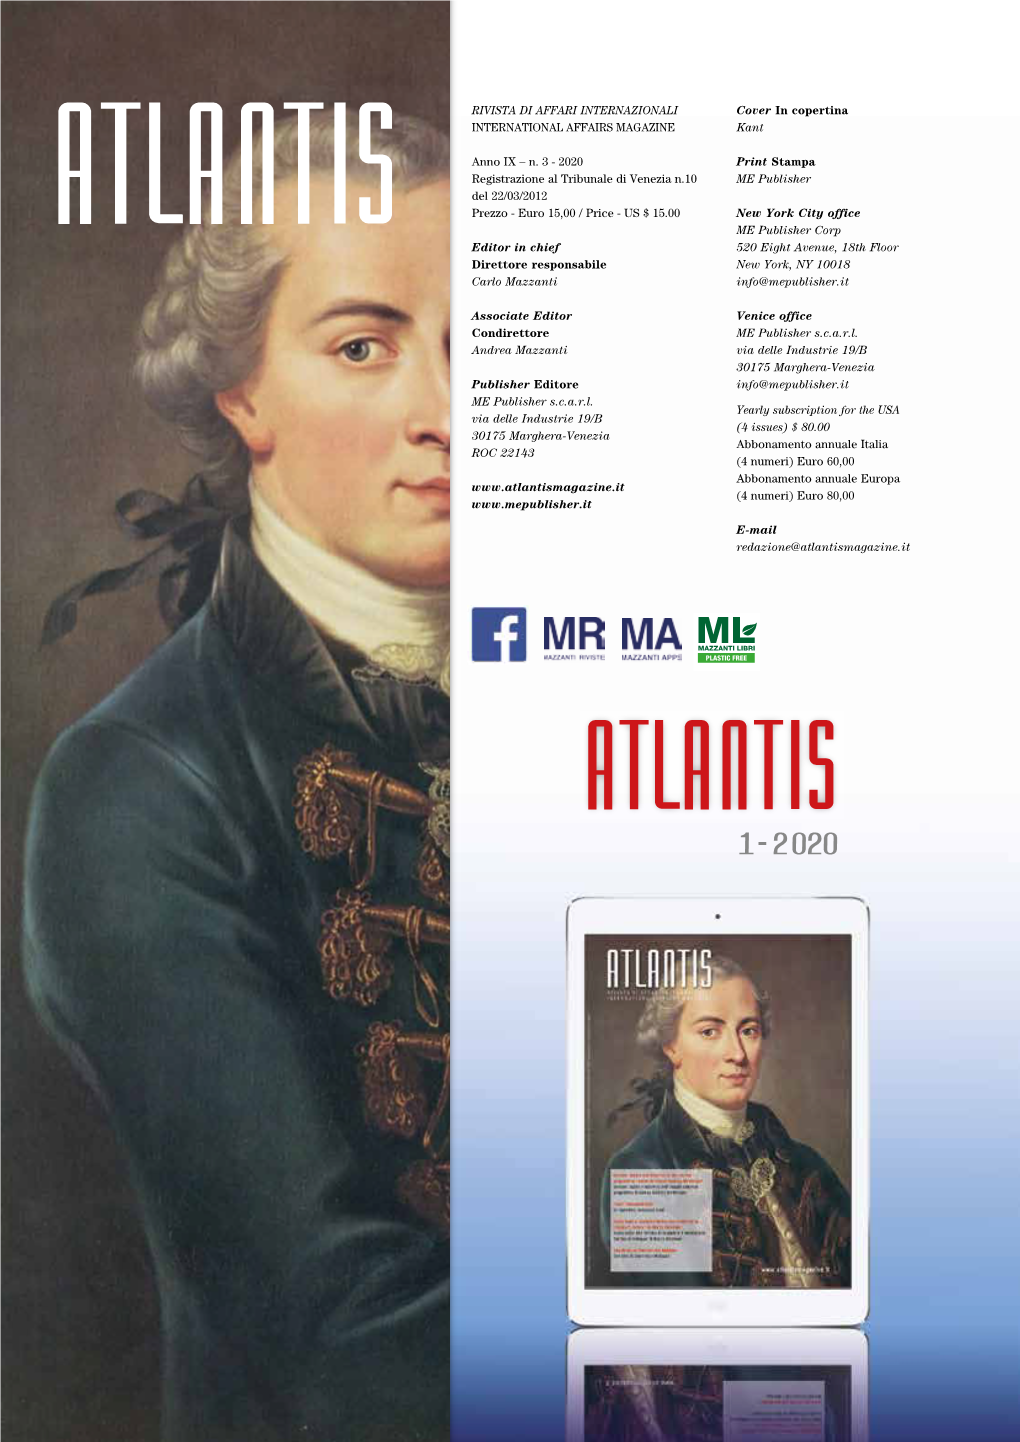 RIVISTA DI AFFARI INTERNAZIONALI Cover in Copertina INTERNATIONAL AFFAIRS MAGAZINE Kant